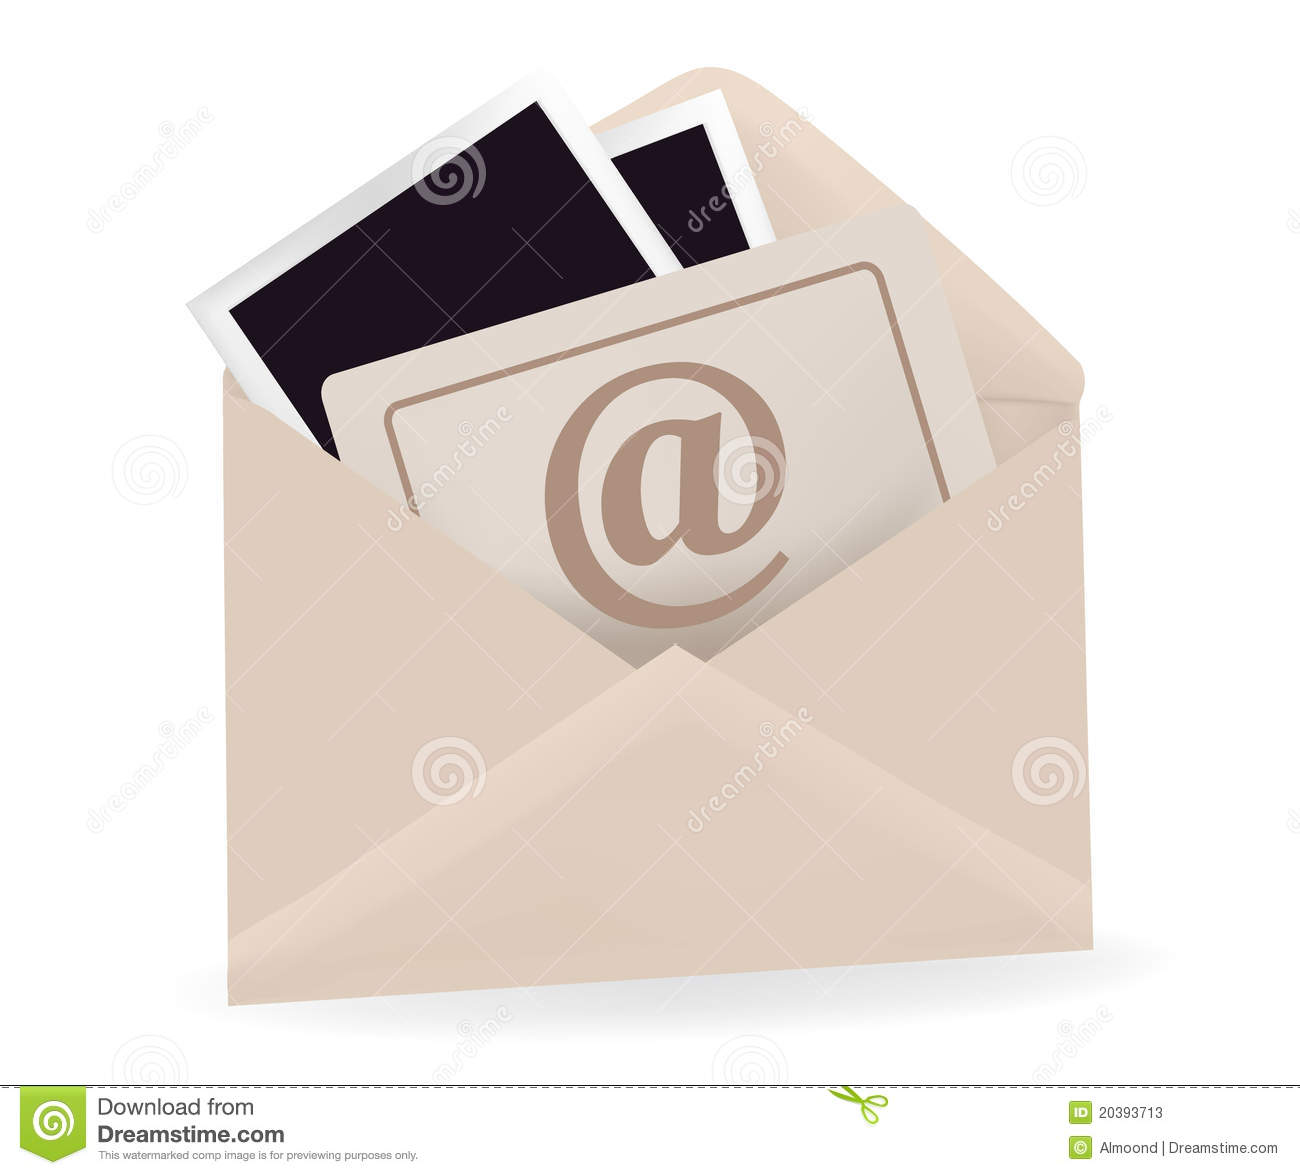 Open Envelope Icon